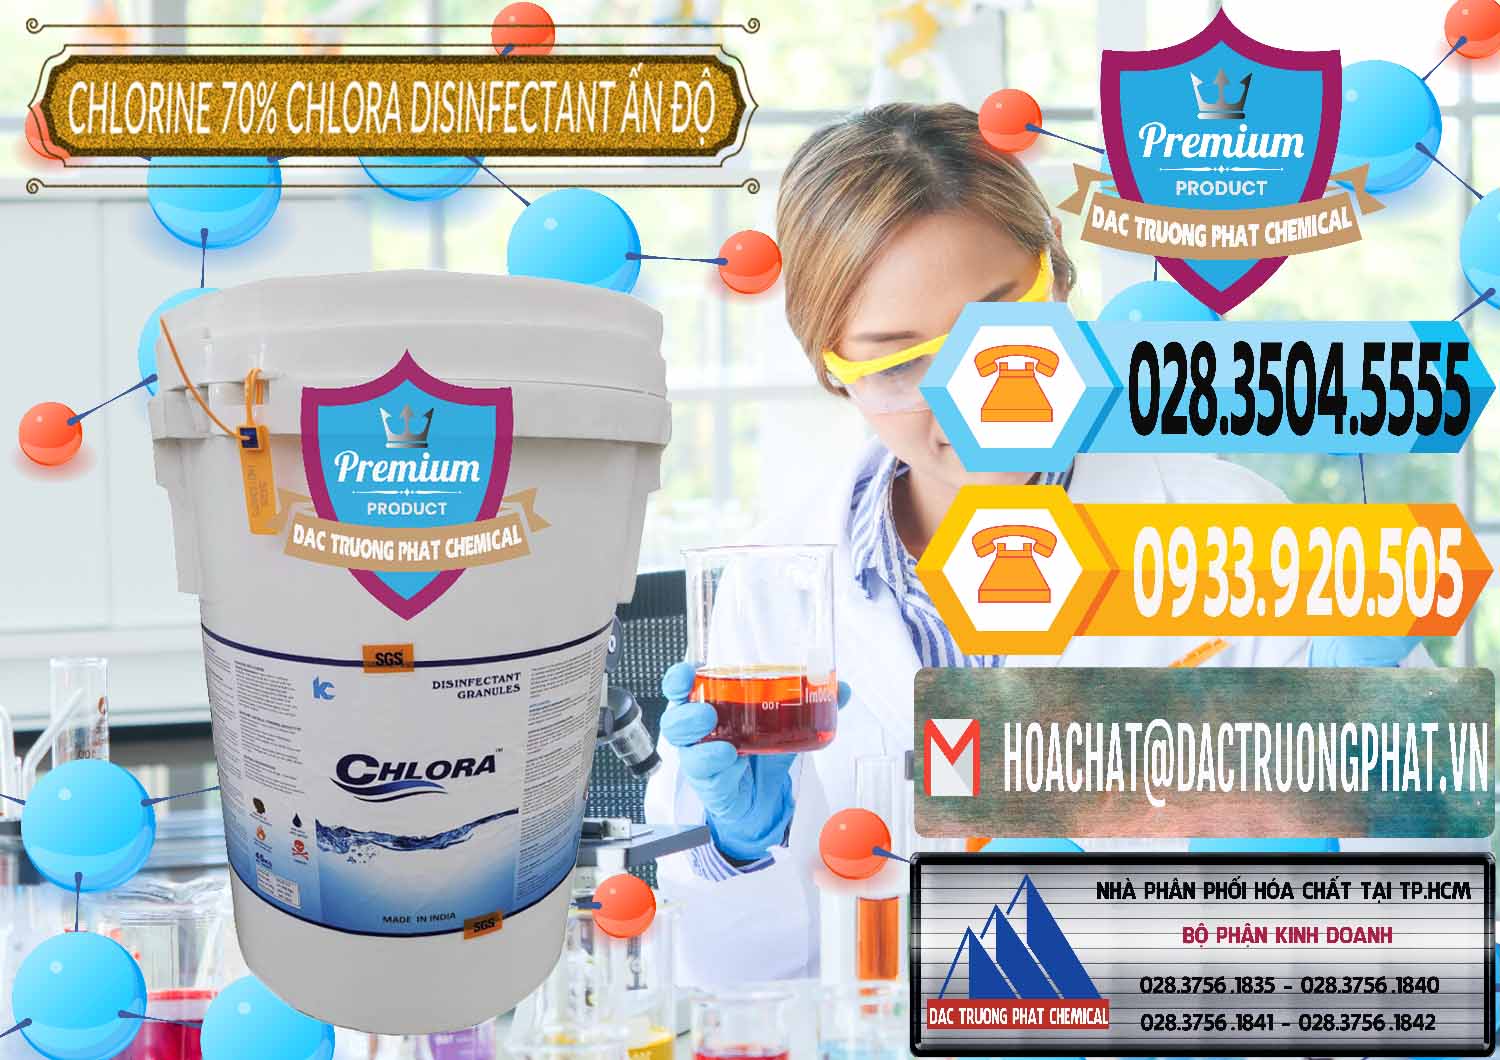 Bán Chlorine – Clorin 70% Chlora Disinfectant Ấn Độ India - 0213 - Nơi chuyên phân phối và kinh doanh hóa chất tại TP.HCM - hoachattayrua.net